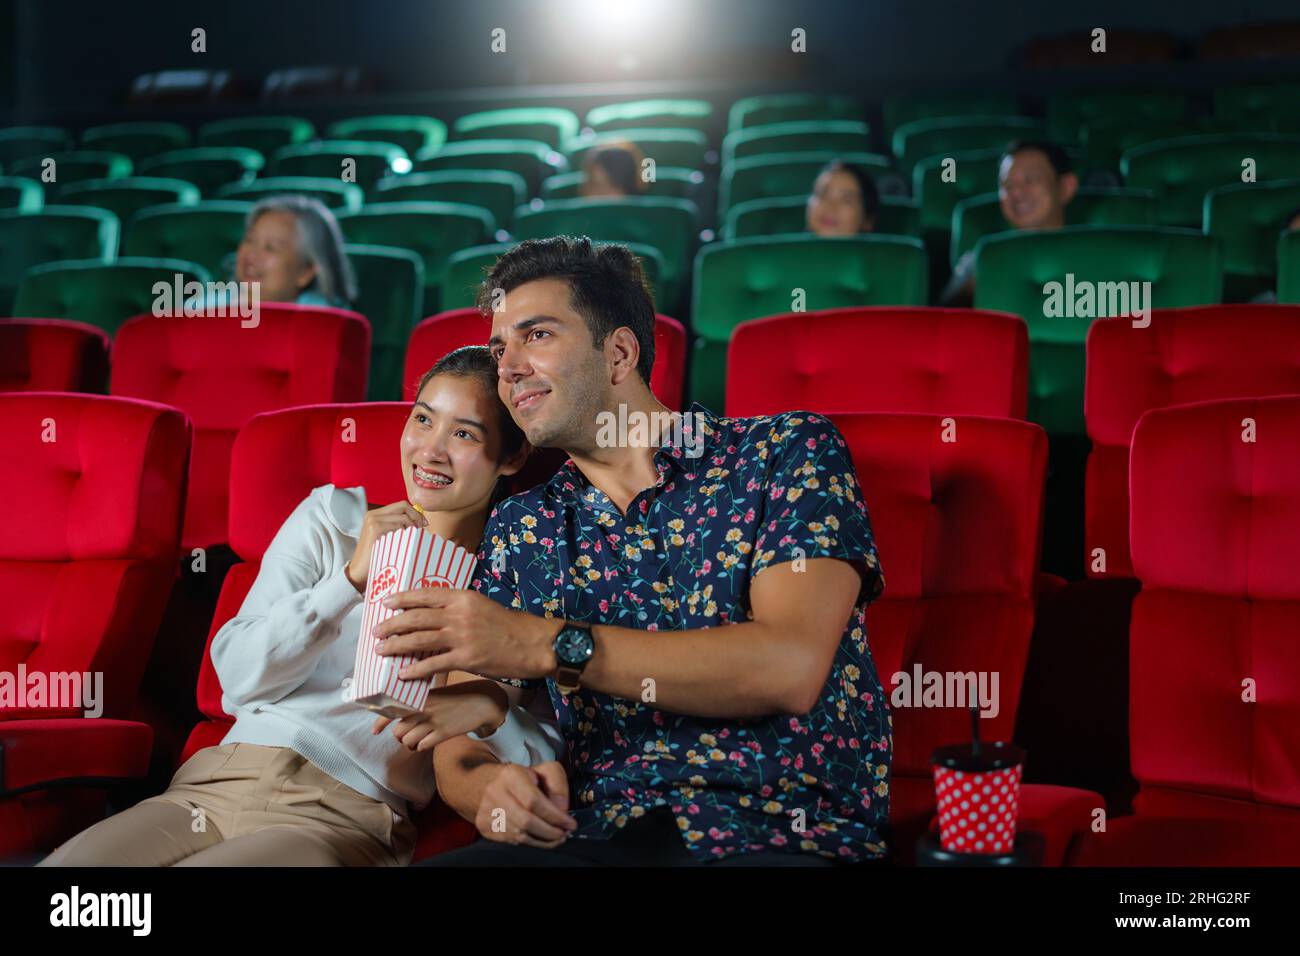 Le coppie si divertono guardando i film mentre tengono popcorn, creando un'esperienza serale al cinema accogliente e divertente. Foto Stock